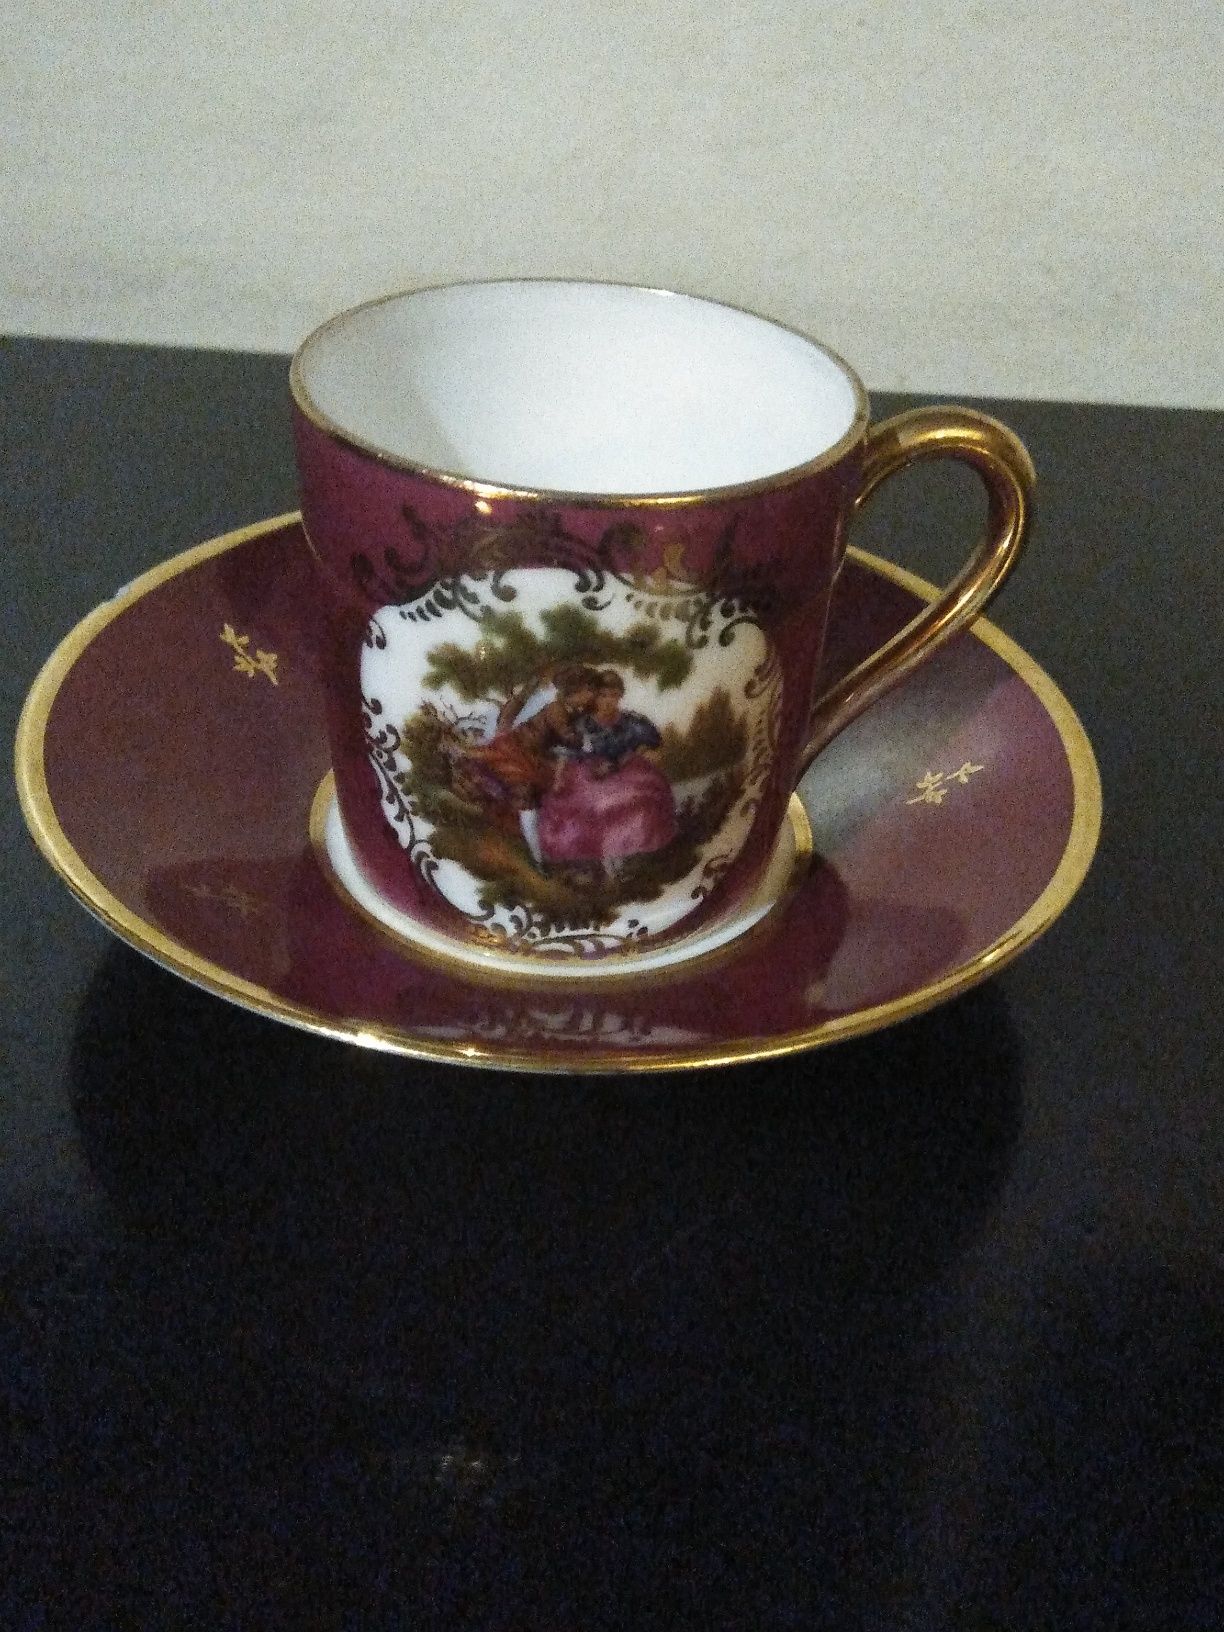 Chávenas de porcelana francesa de coleção